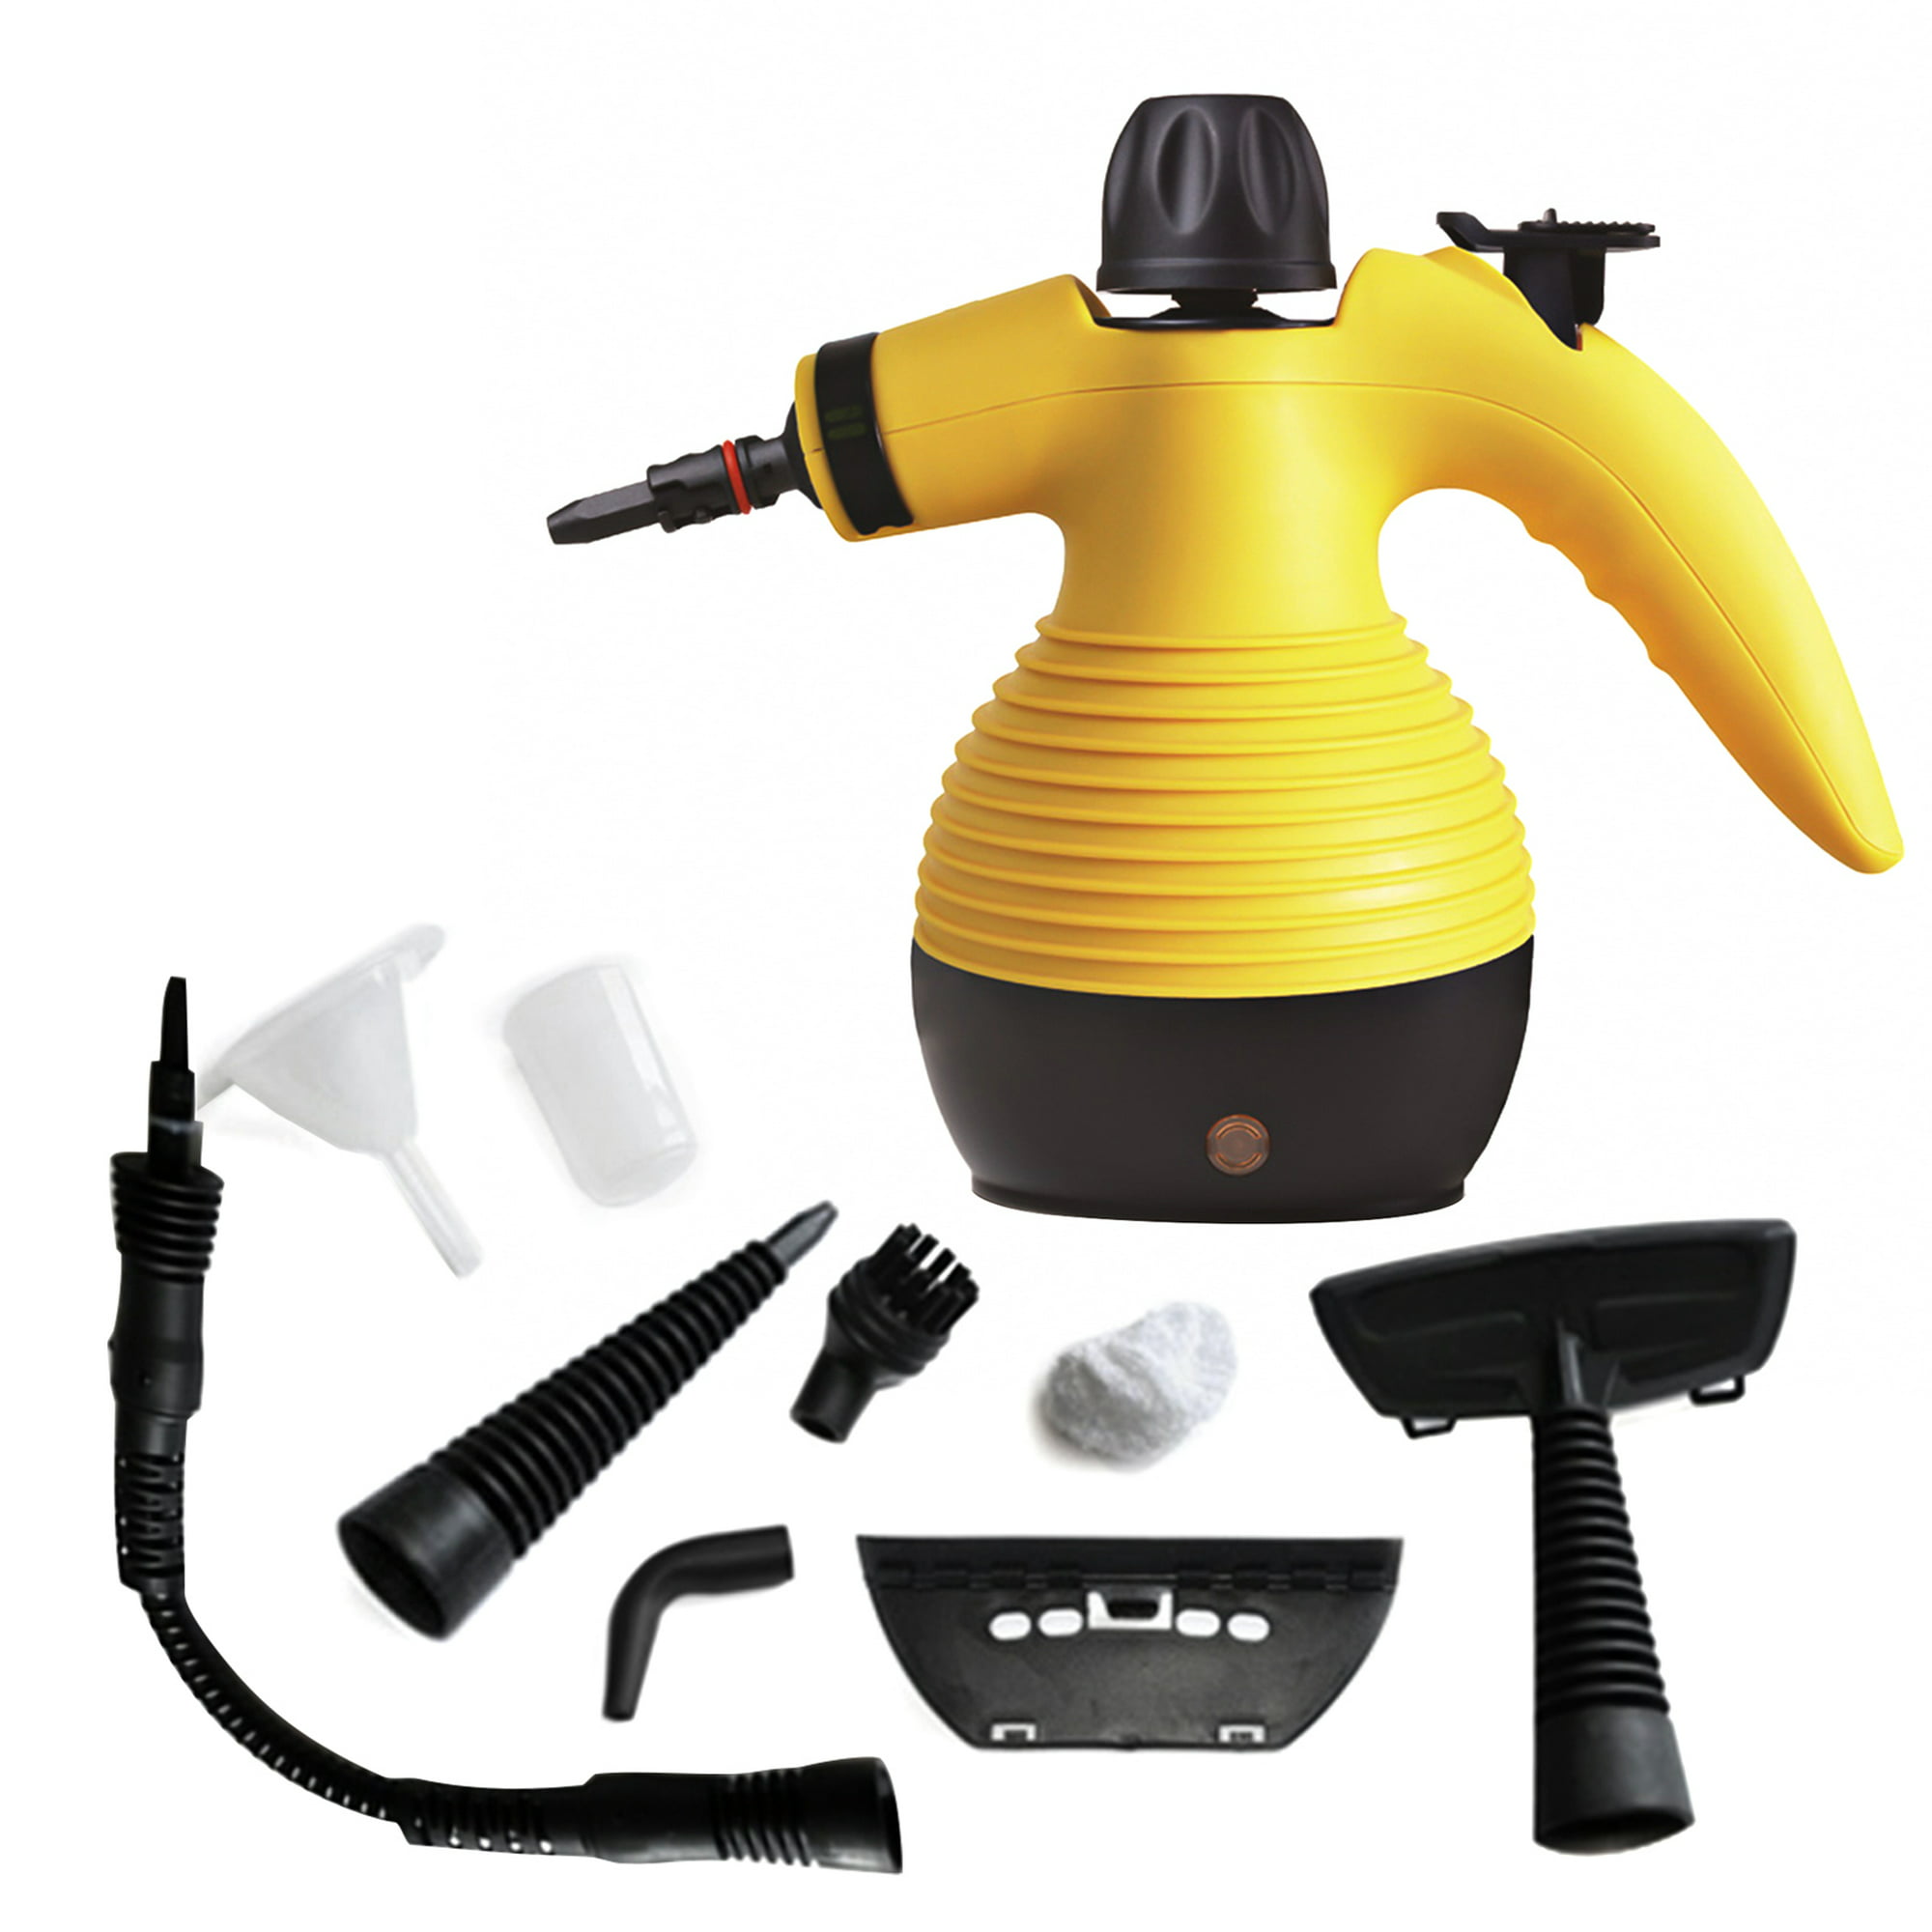 Comprar Limpiador a vapor portátil, máquina de limpieza móvil de alta  presión y alta temperatura, 1500W, Limpiador a vapor